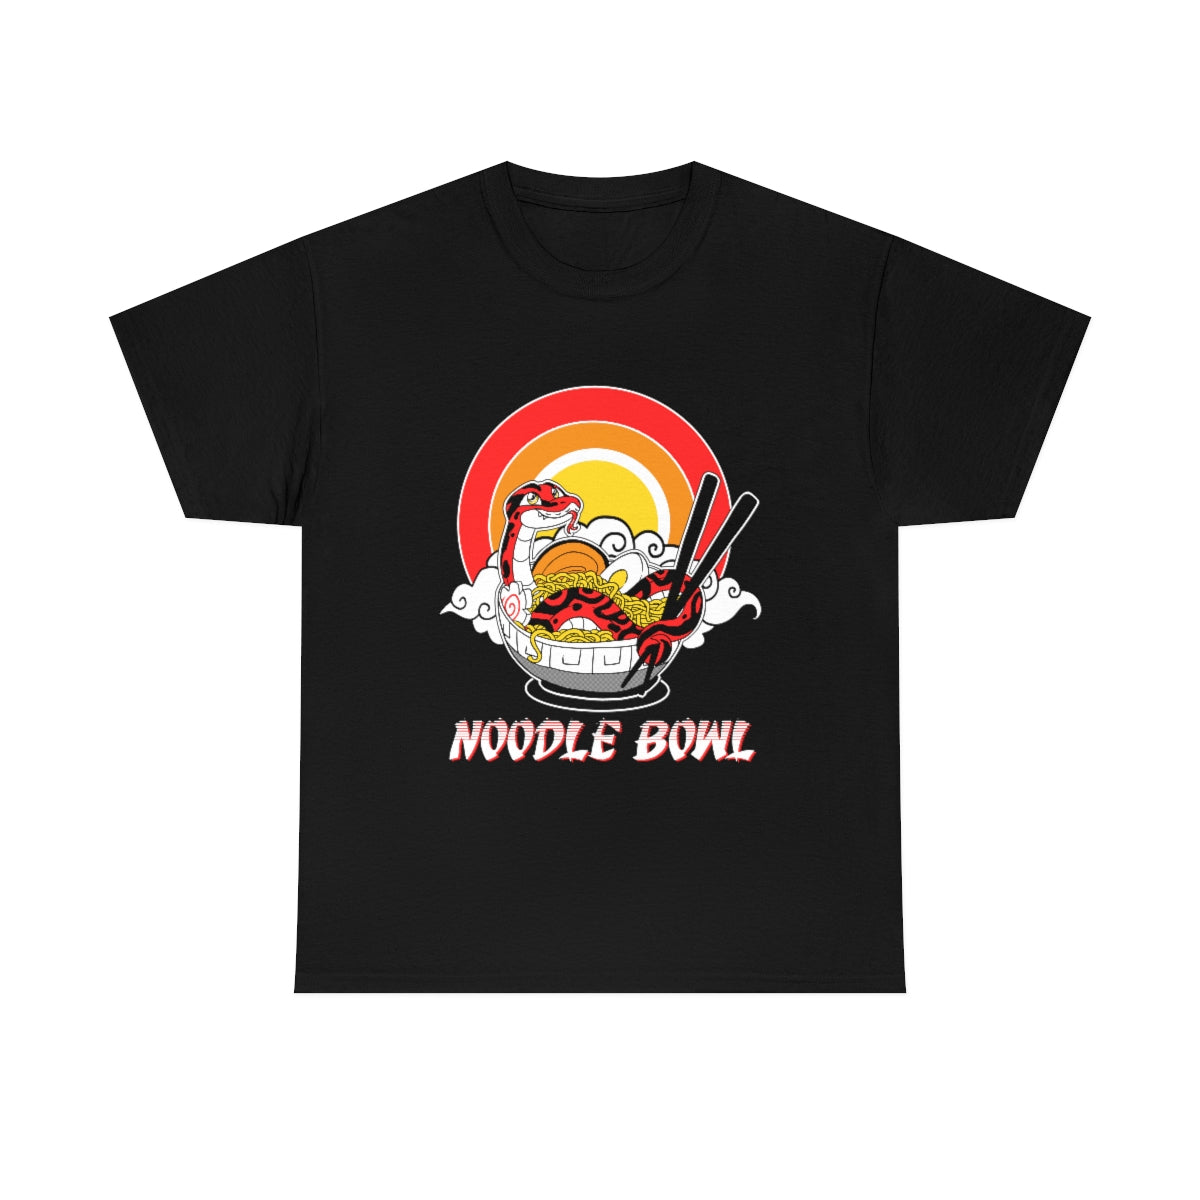 Noodle Bowl - T-Shirt T-Shirt Crunchy Crowe Black S 